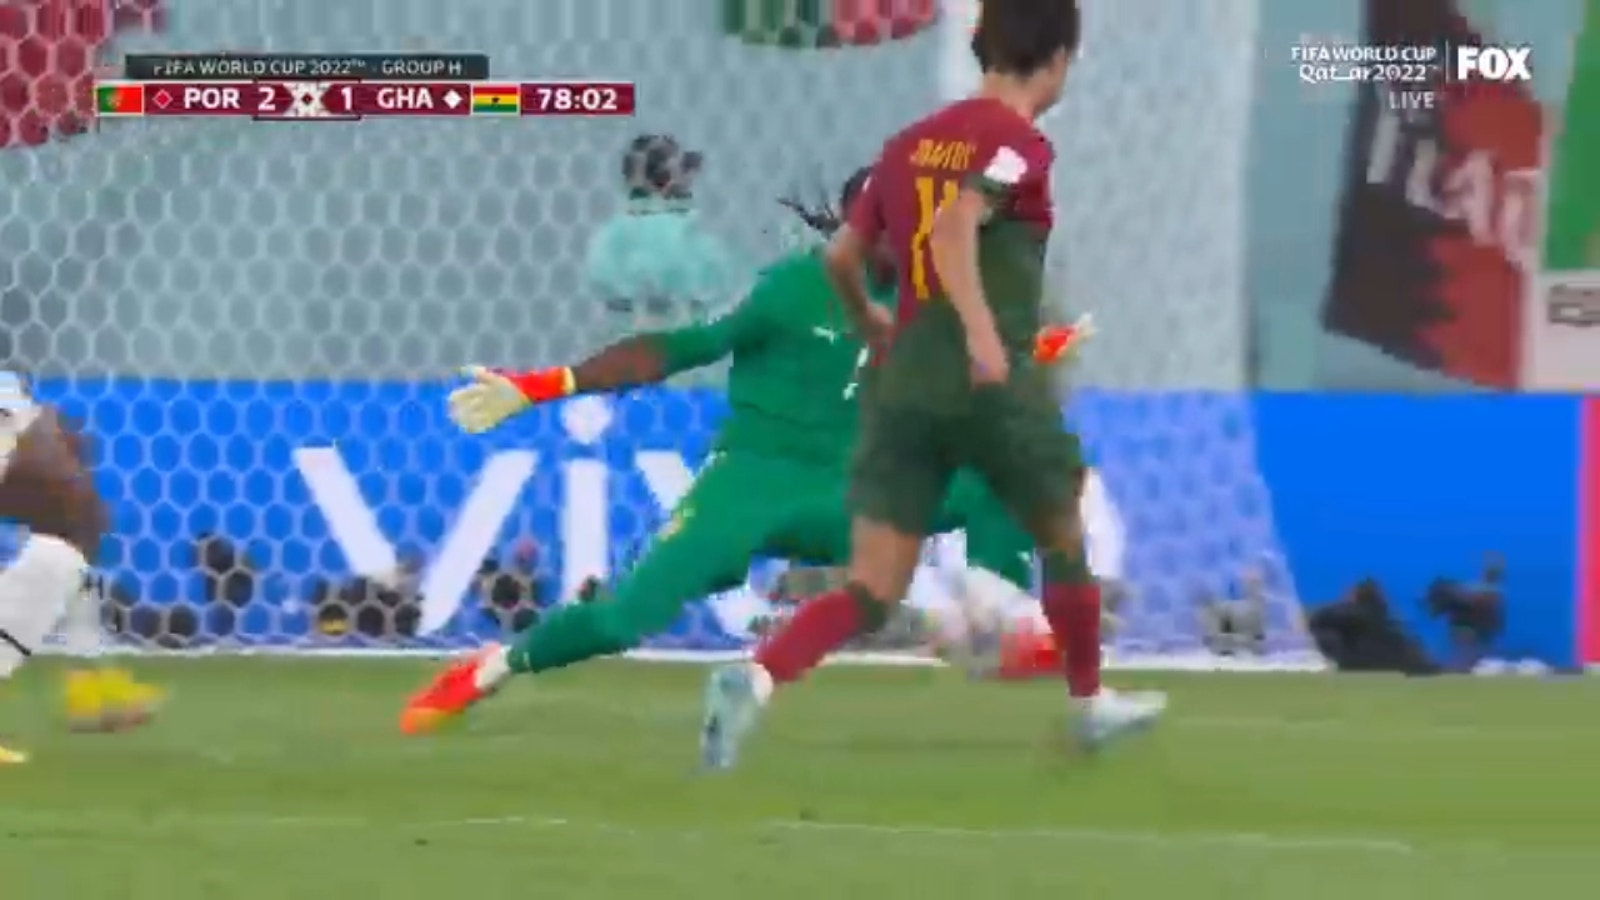 Portugalec Joao Felix je dosegel gol proti Gani